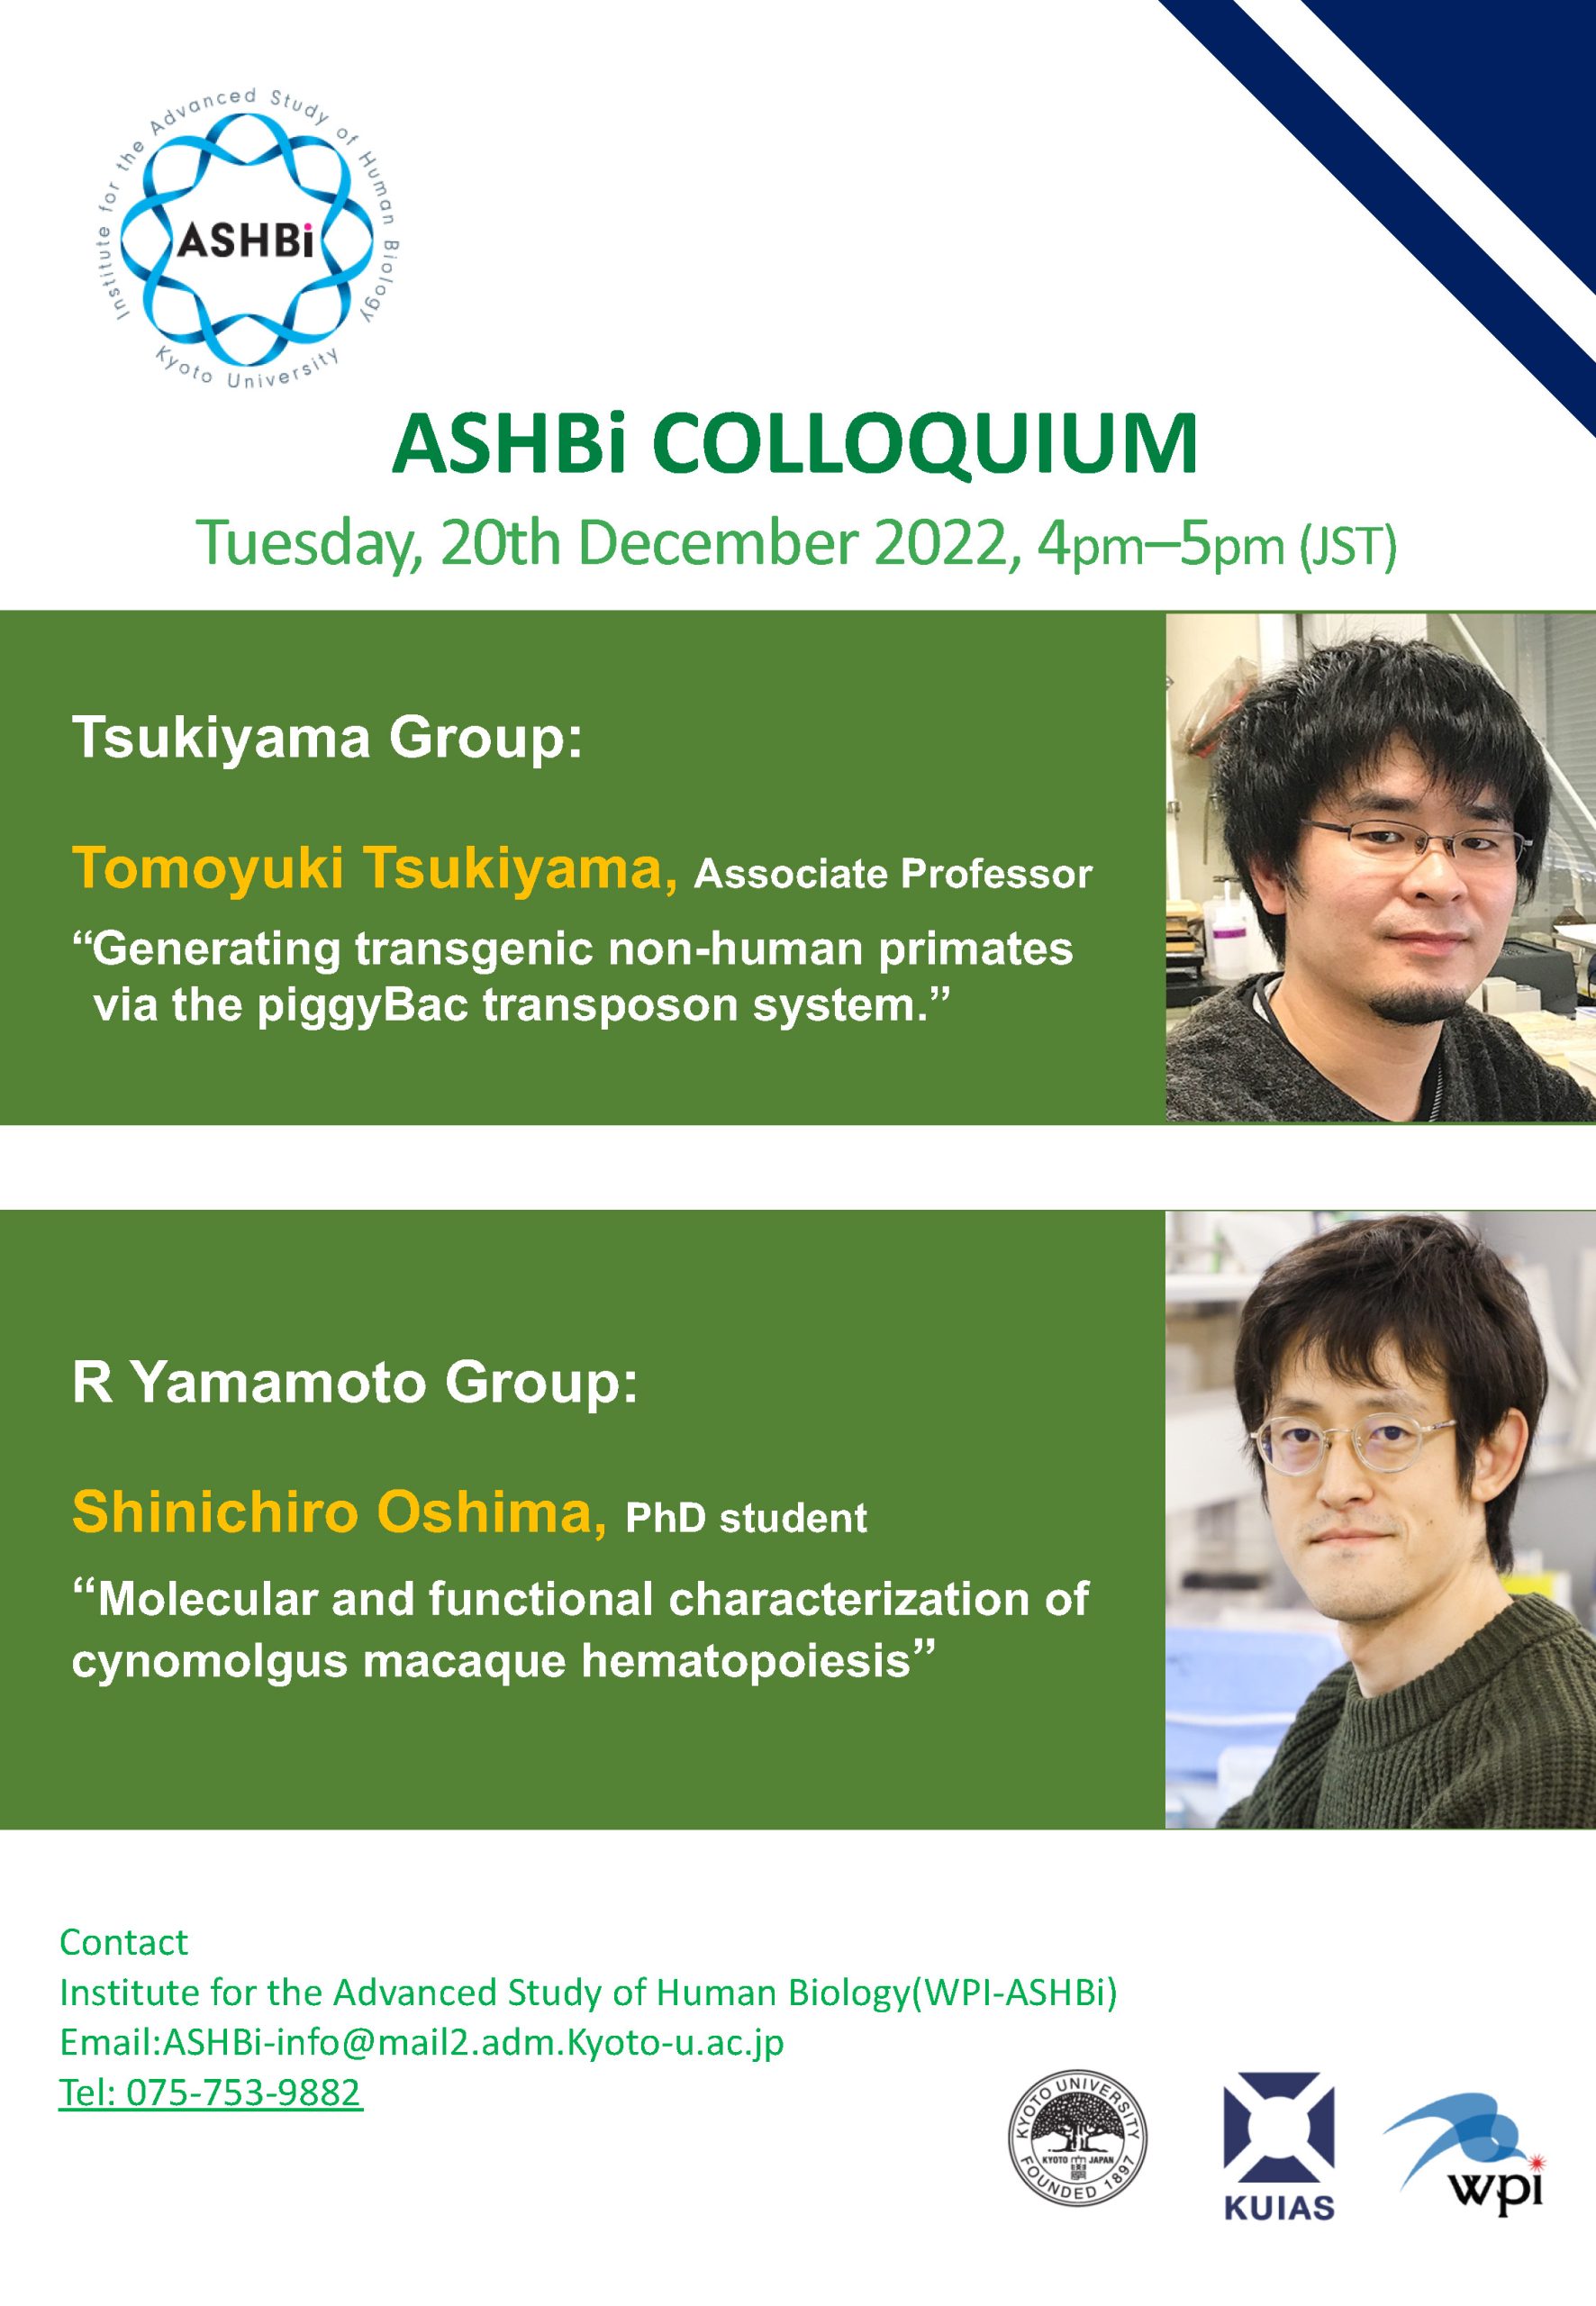 31th ASHBi Colloquium(Tsukiyama Group & R Yamamoto Group)